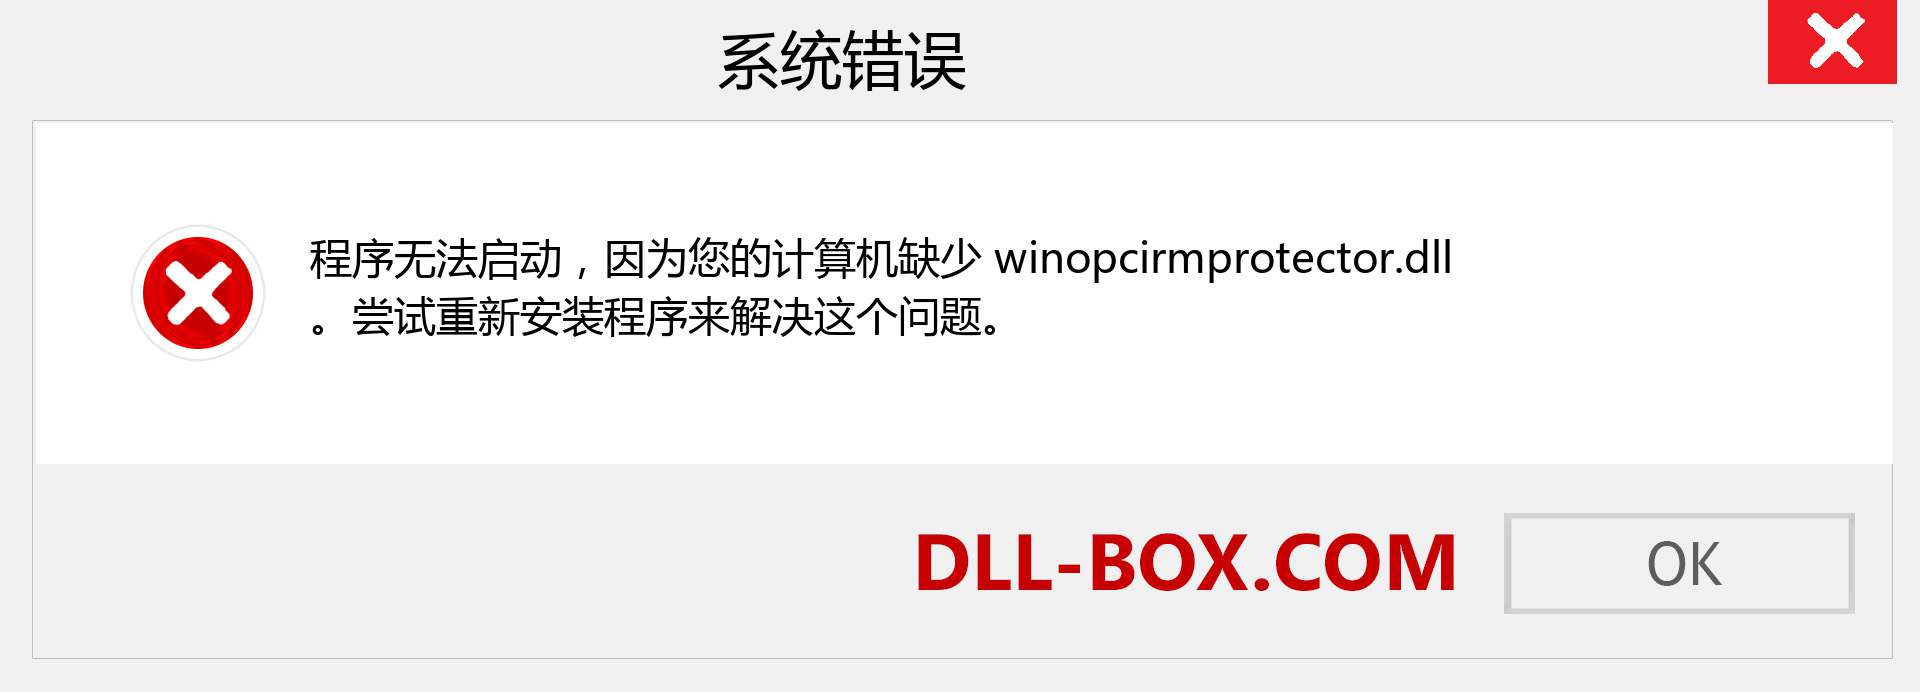 winopcirmprotector.dll 文件丢失？。 适用于 Windows 7、8、10 的下载 - 修复 Windows、照片、图像上的 winopcirmprotector dll 丢失错误